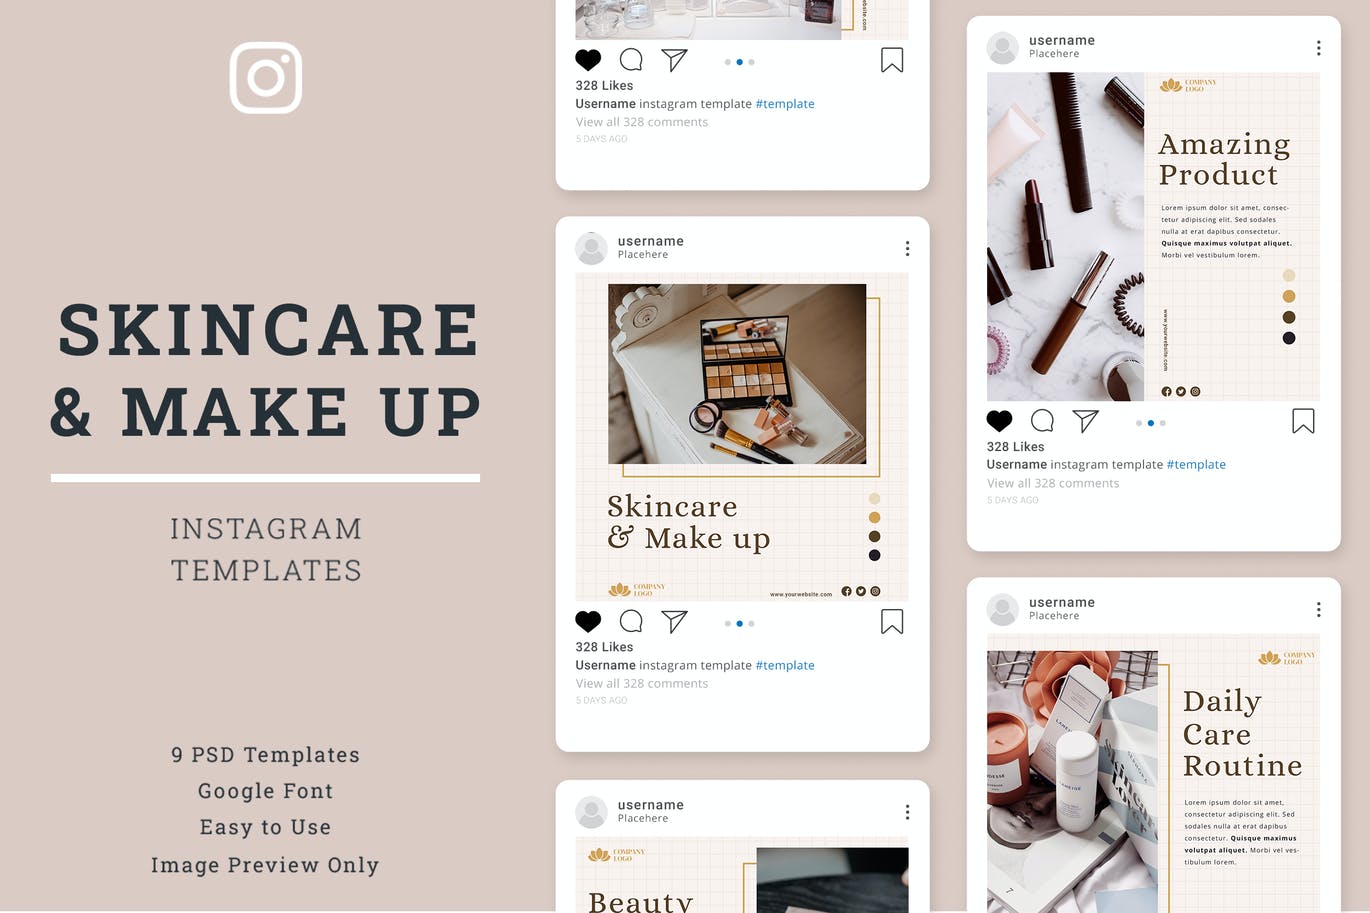 美容 美妆 护肤 化妆品 社交推广Instagram帖子设计模板 Skin Care Instagram Post Template设计素材模板